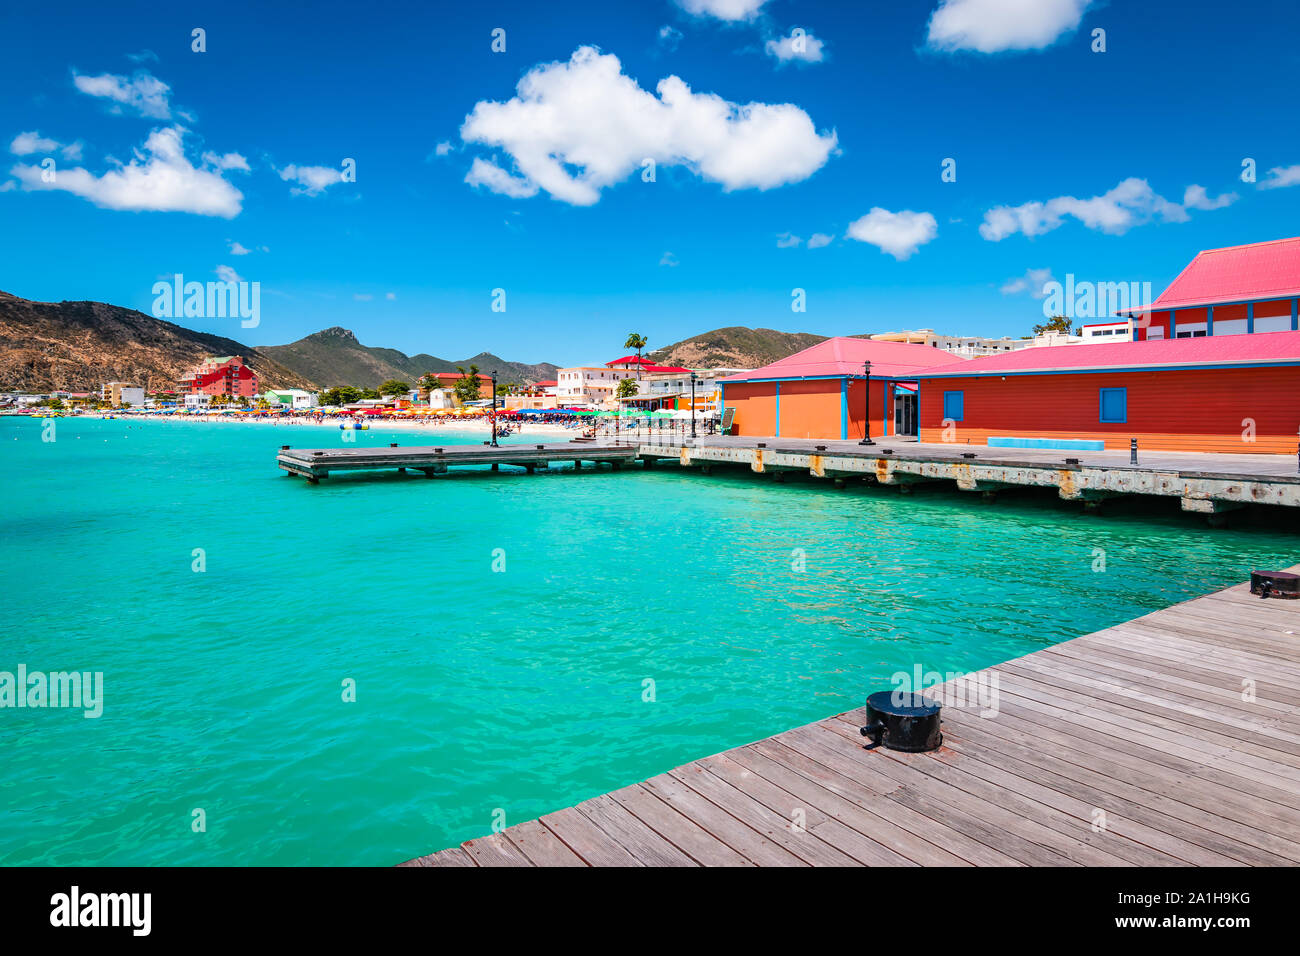 Philipsburg, St Maarten (Sint Maarten, Saint Martin), dei Caraibi. Dock in legno e gli edifici colorati a Great Bay beach. Crociera popolare destinazione. Foto Stock